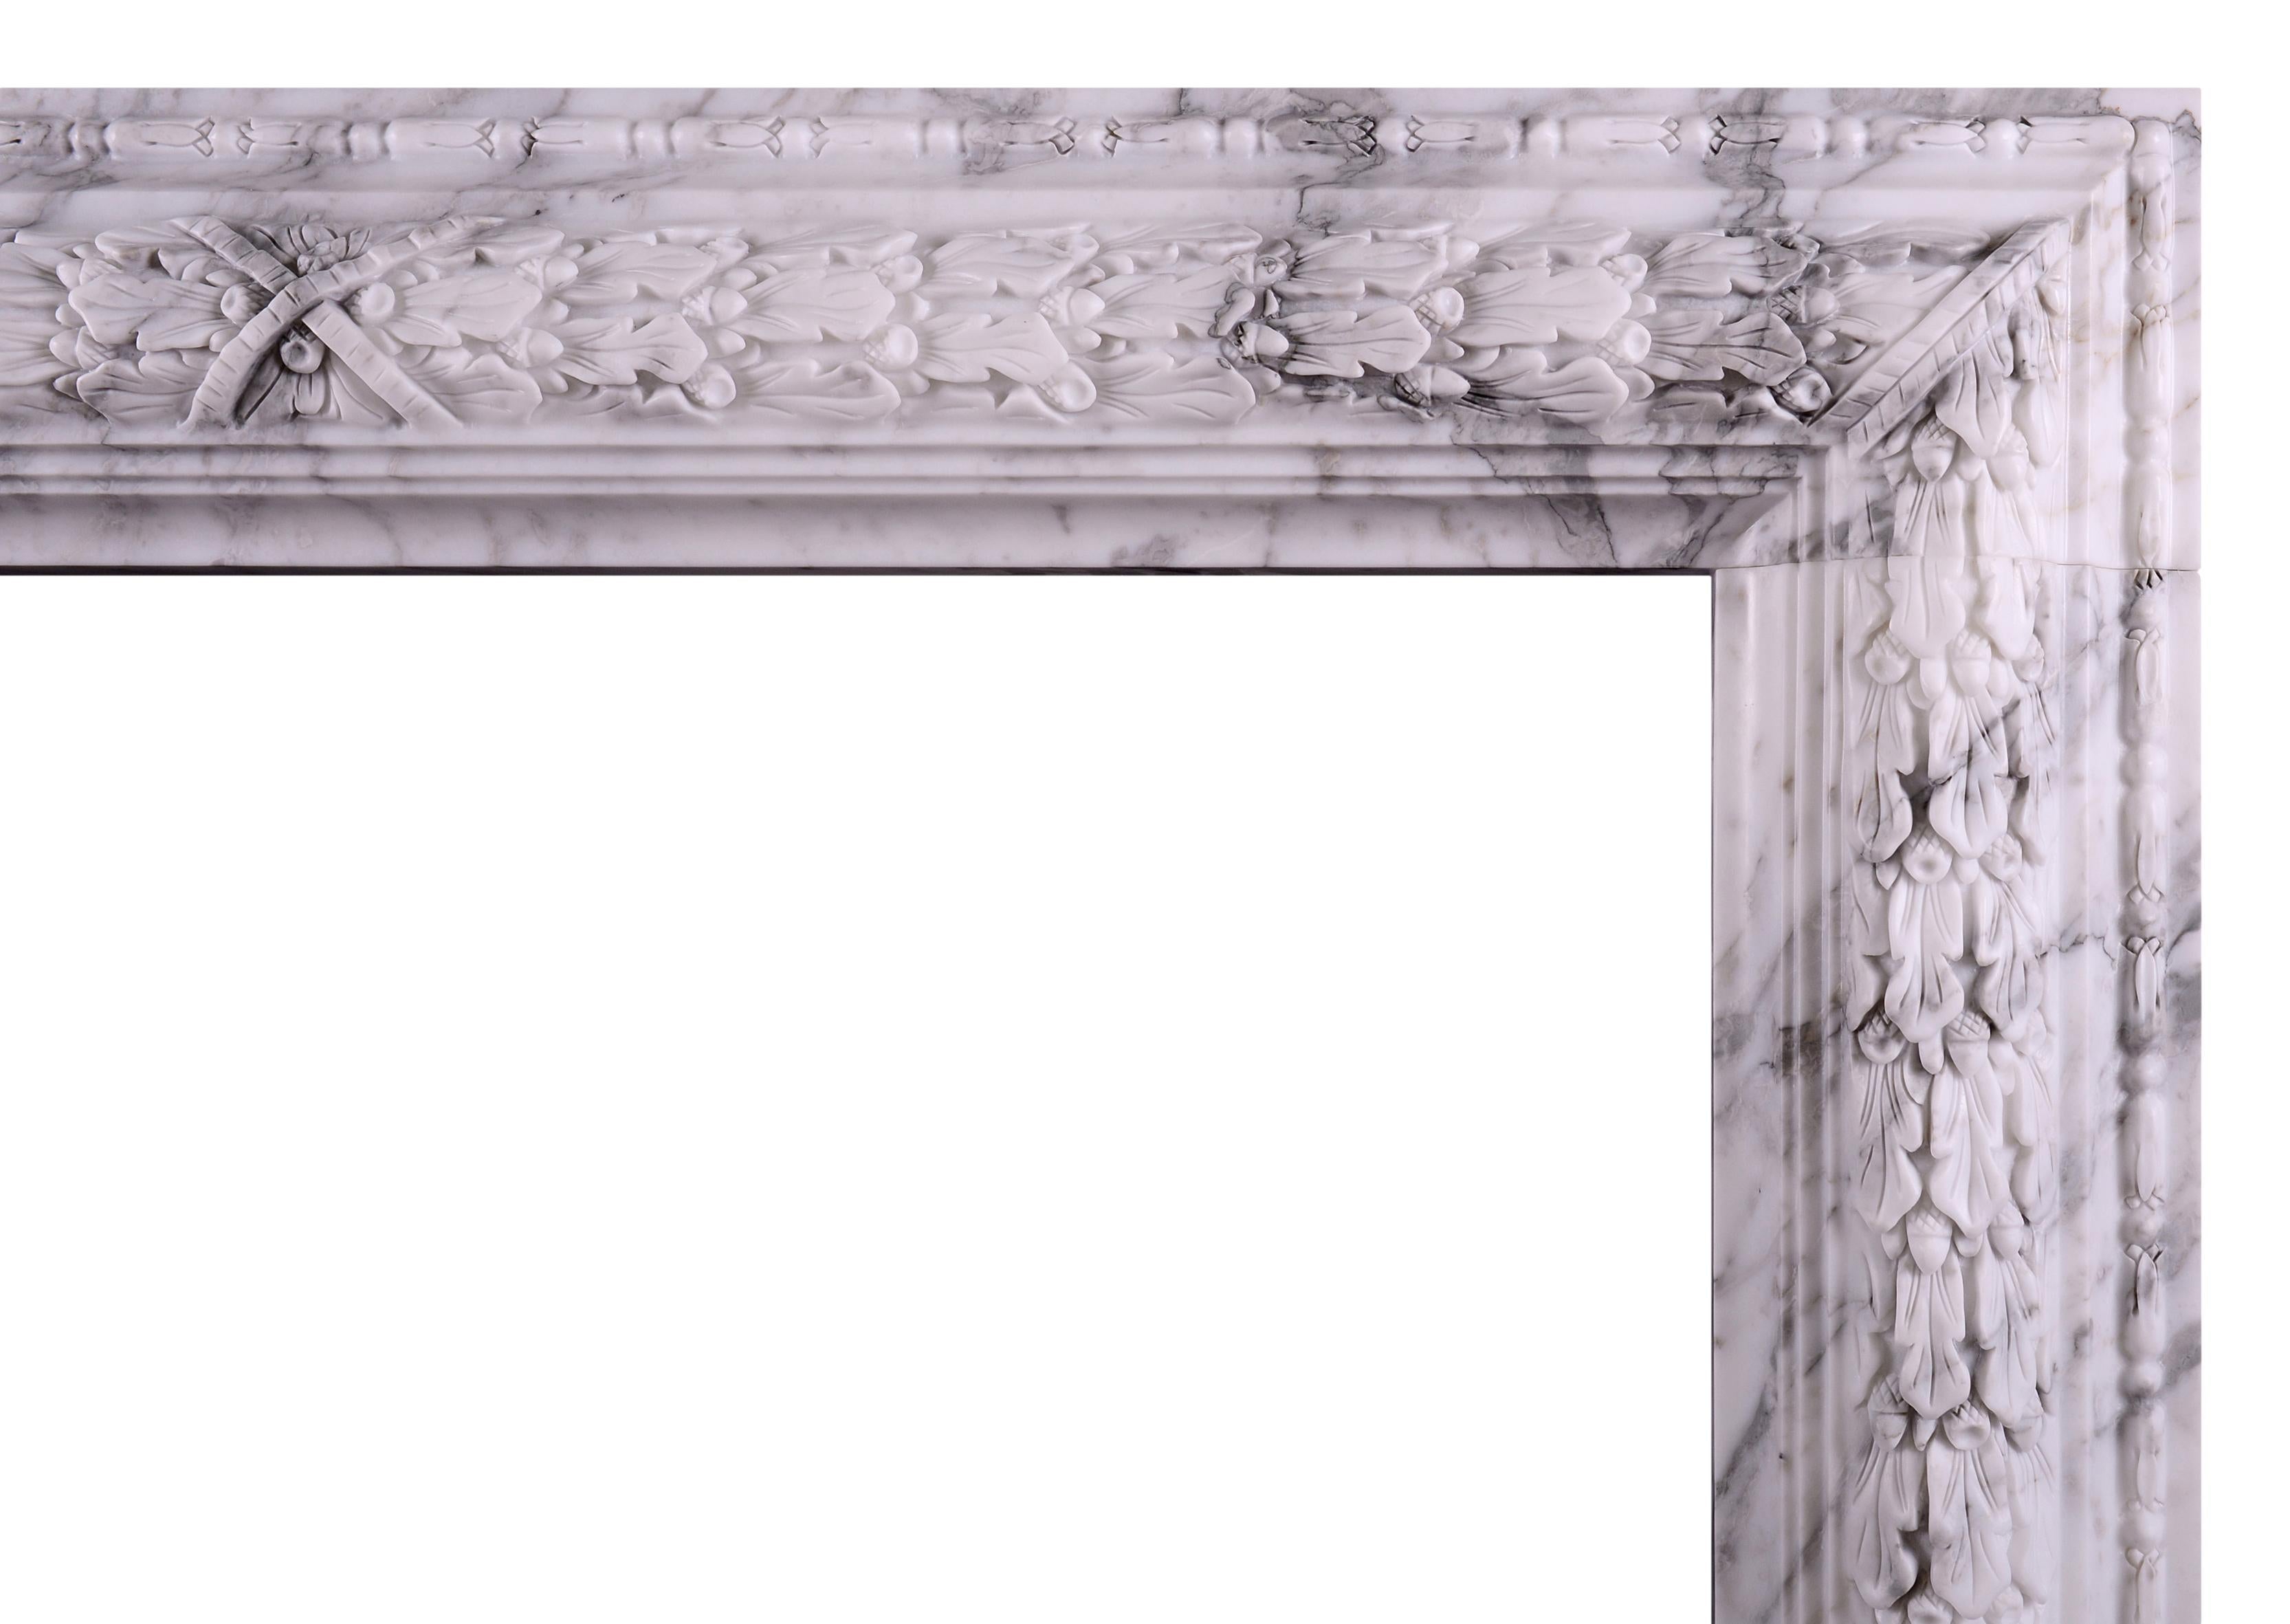 Une cheminée moulée à bolets, élégante et discrète, en marbre italien Arabescato. La frise est ornée d'une feuille de chêne sculptée et d'un ruban central croisé. Copie d'un original d'époque. Il peut être fabriqué à n'importe quelle taille dans